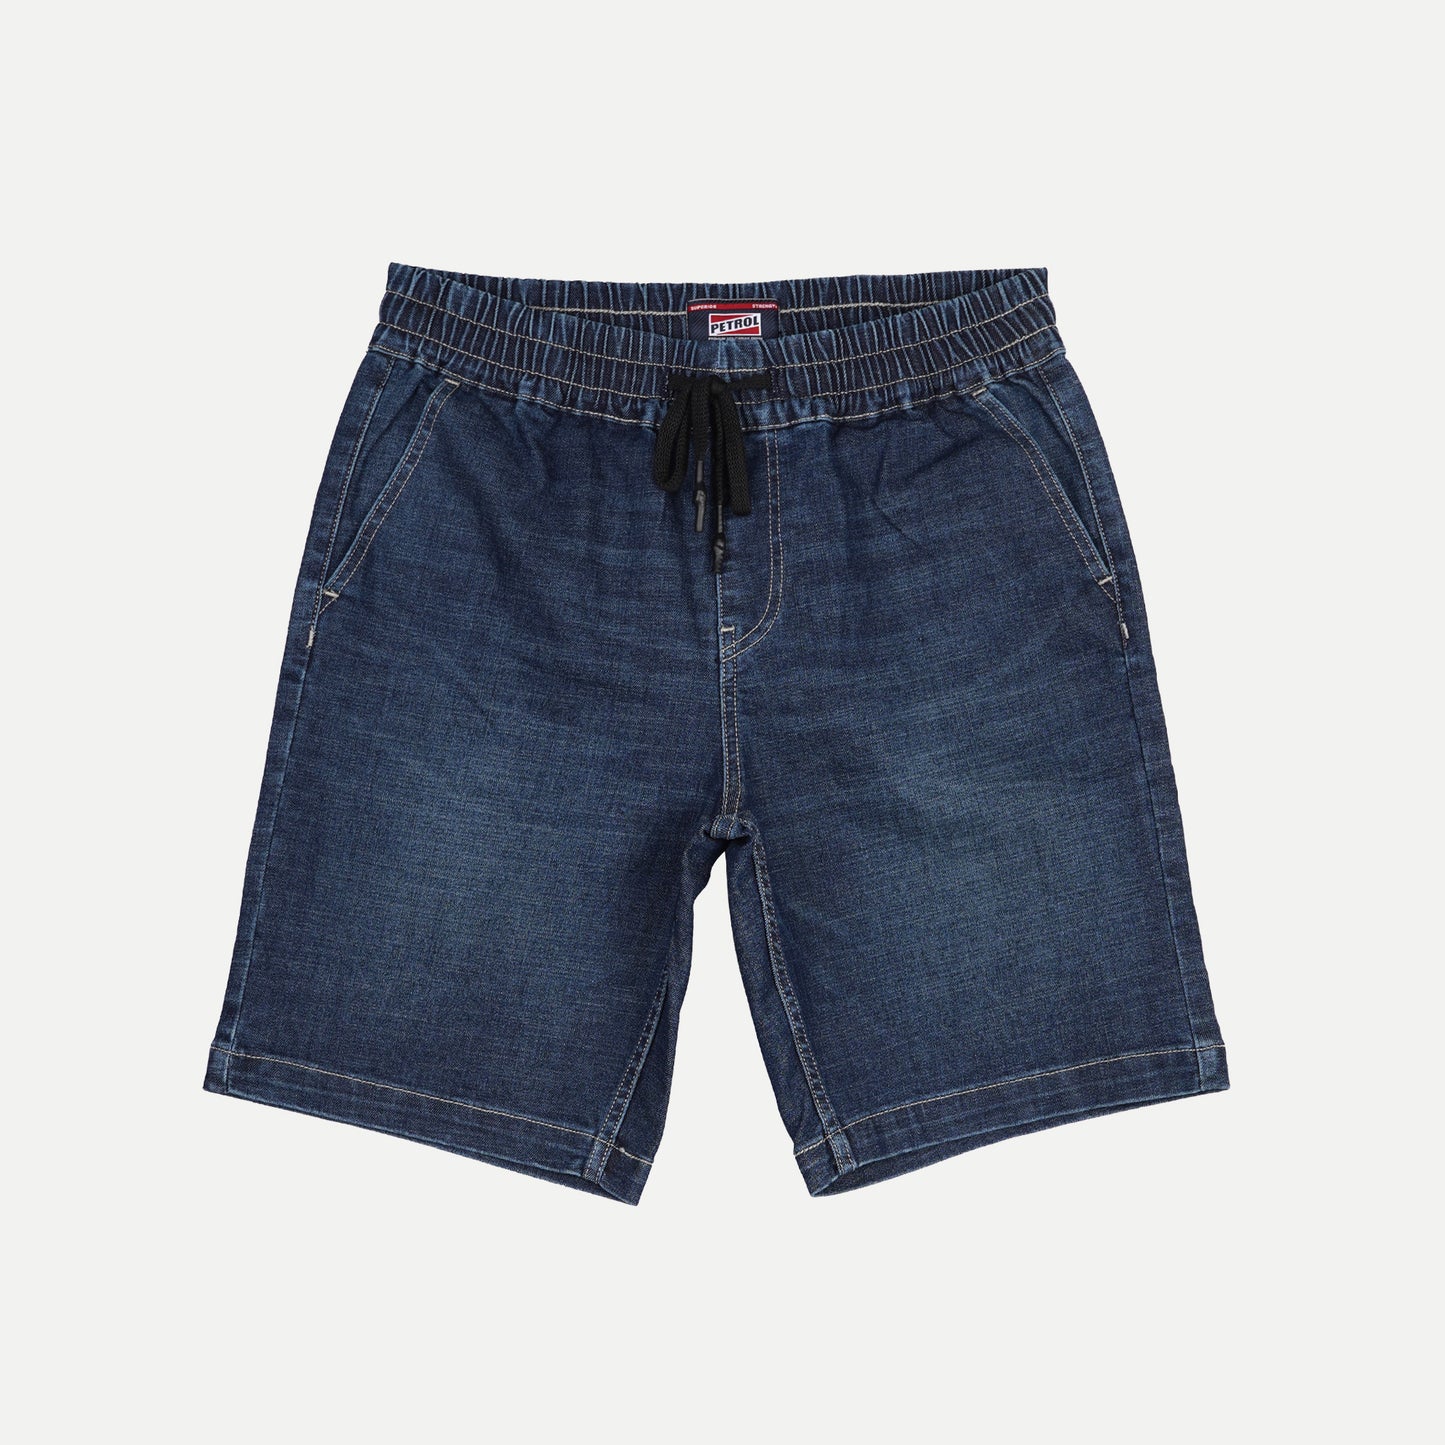 Petrol Basic Non-Denim Jogger Shorts for Men Regular Fitting Garment Wash Fabric Casual short Medium Shade Jogger short for Men 150775 (Medium Shade)